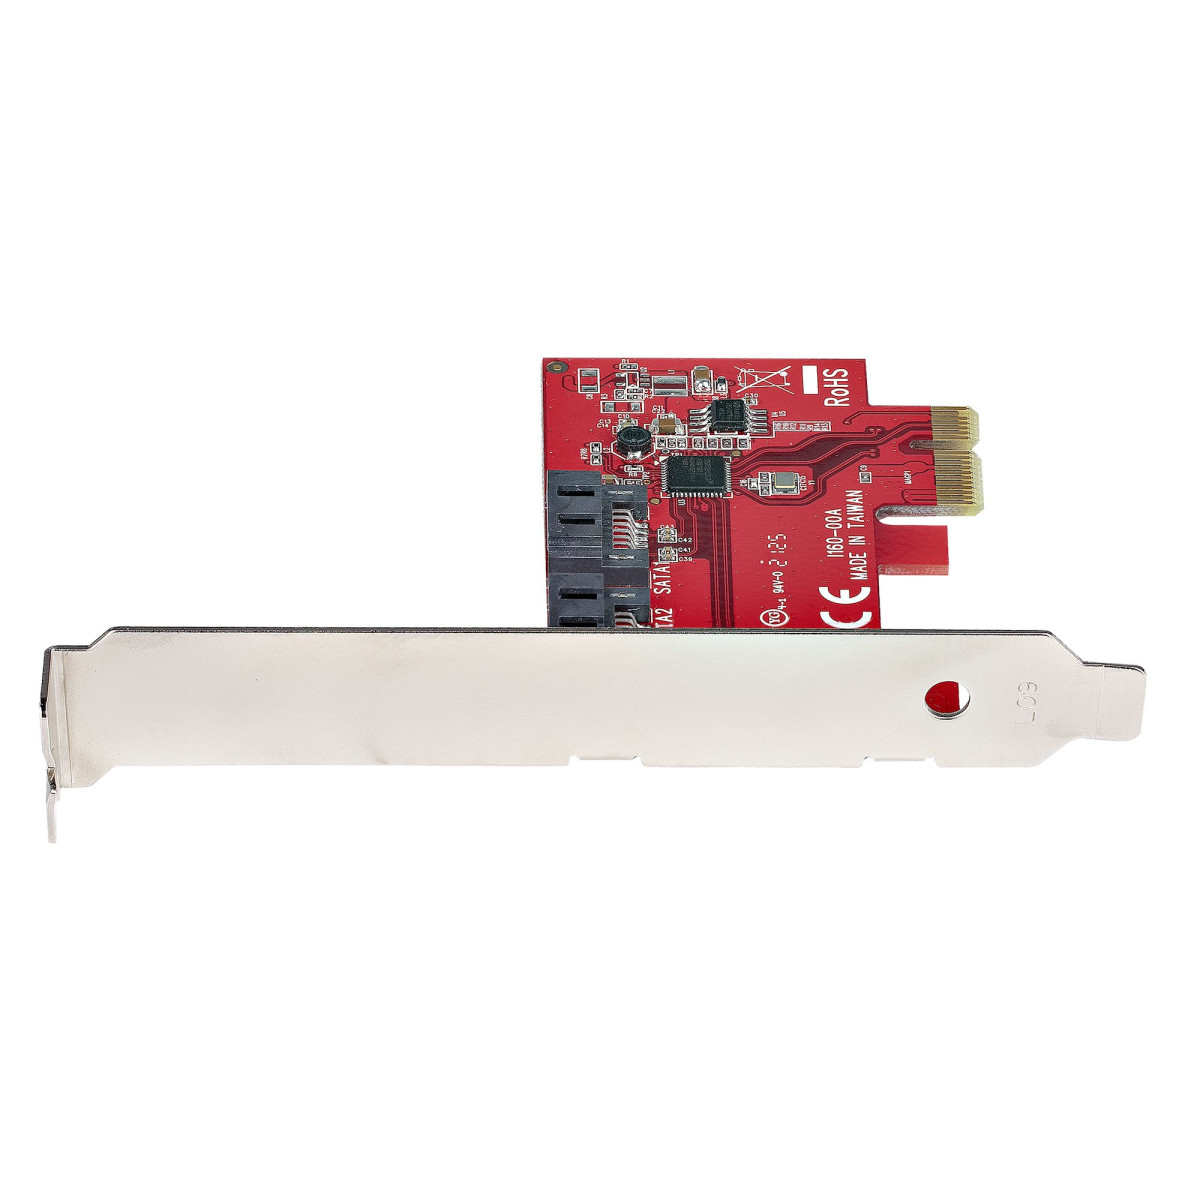 SATA PCIe Card 2 Ports 6Gbps Non-RAID